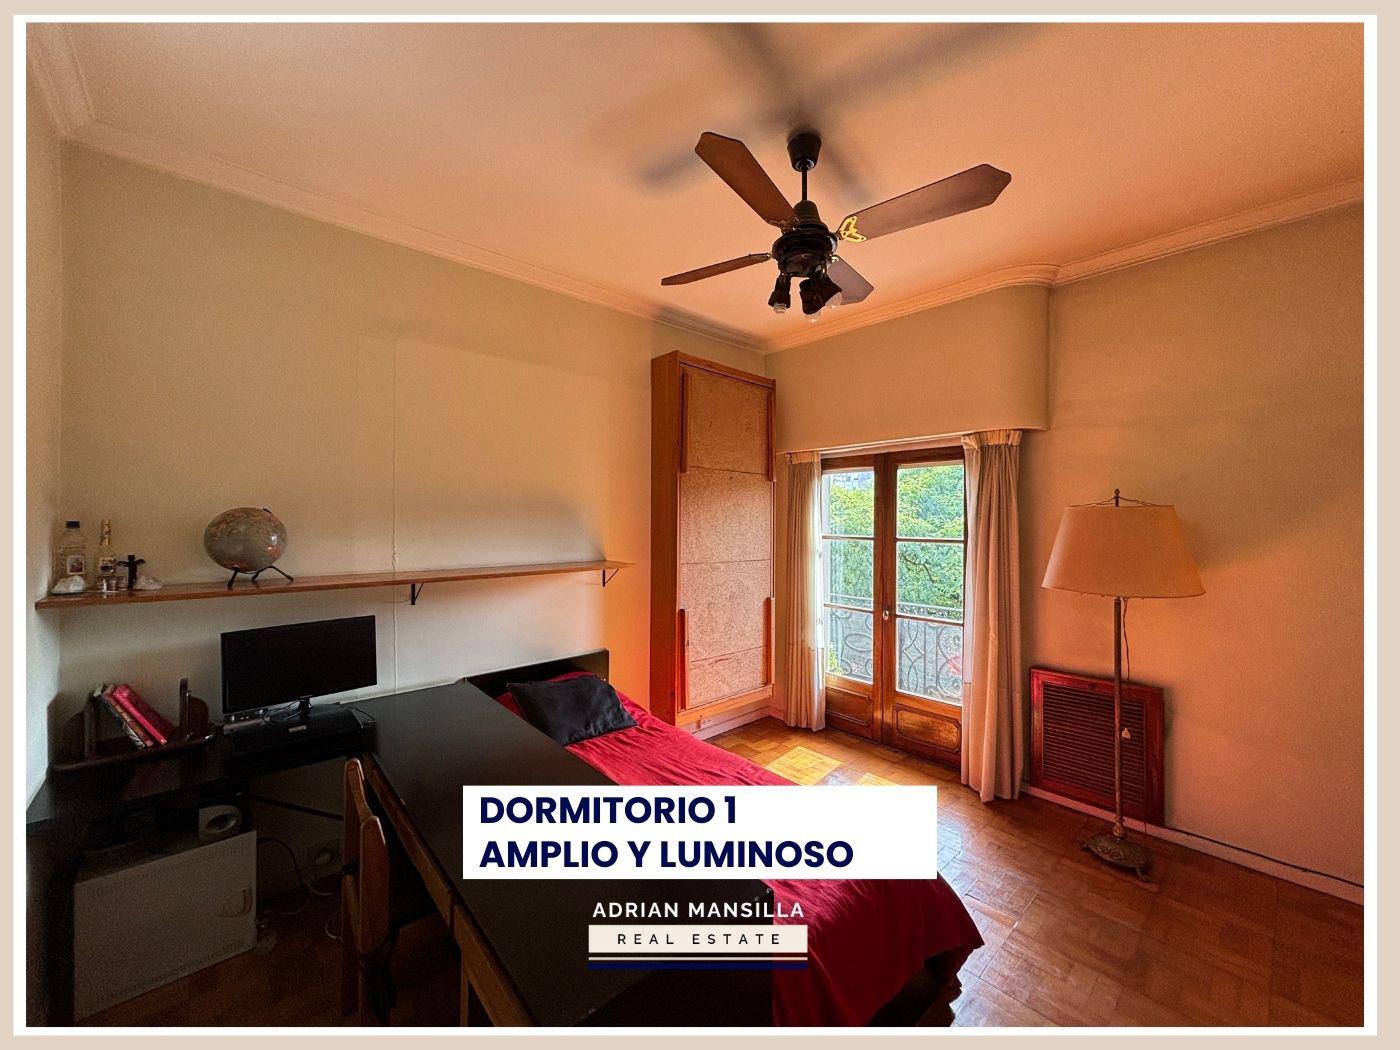 #5296928 | Sale | Apartment | Caballito Sur (Adrian Mansilla)